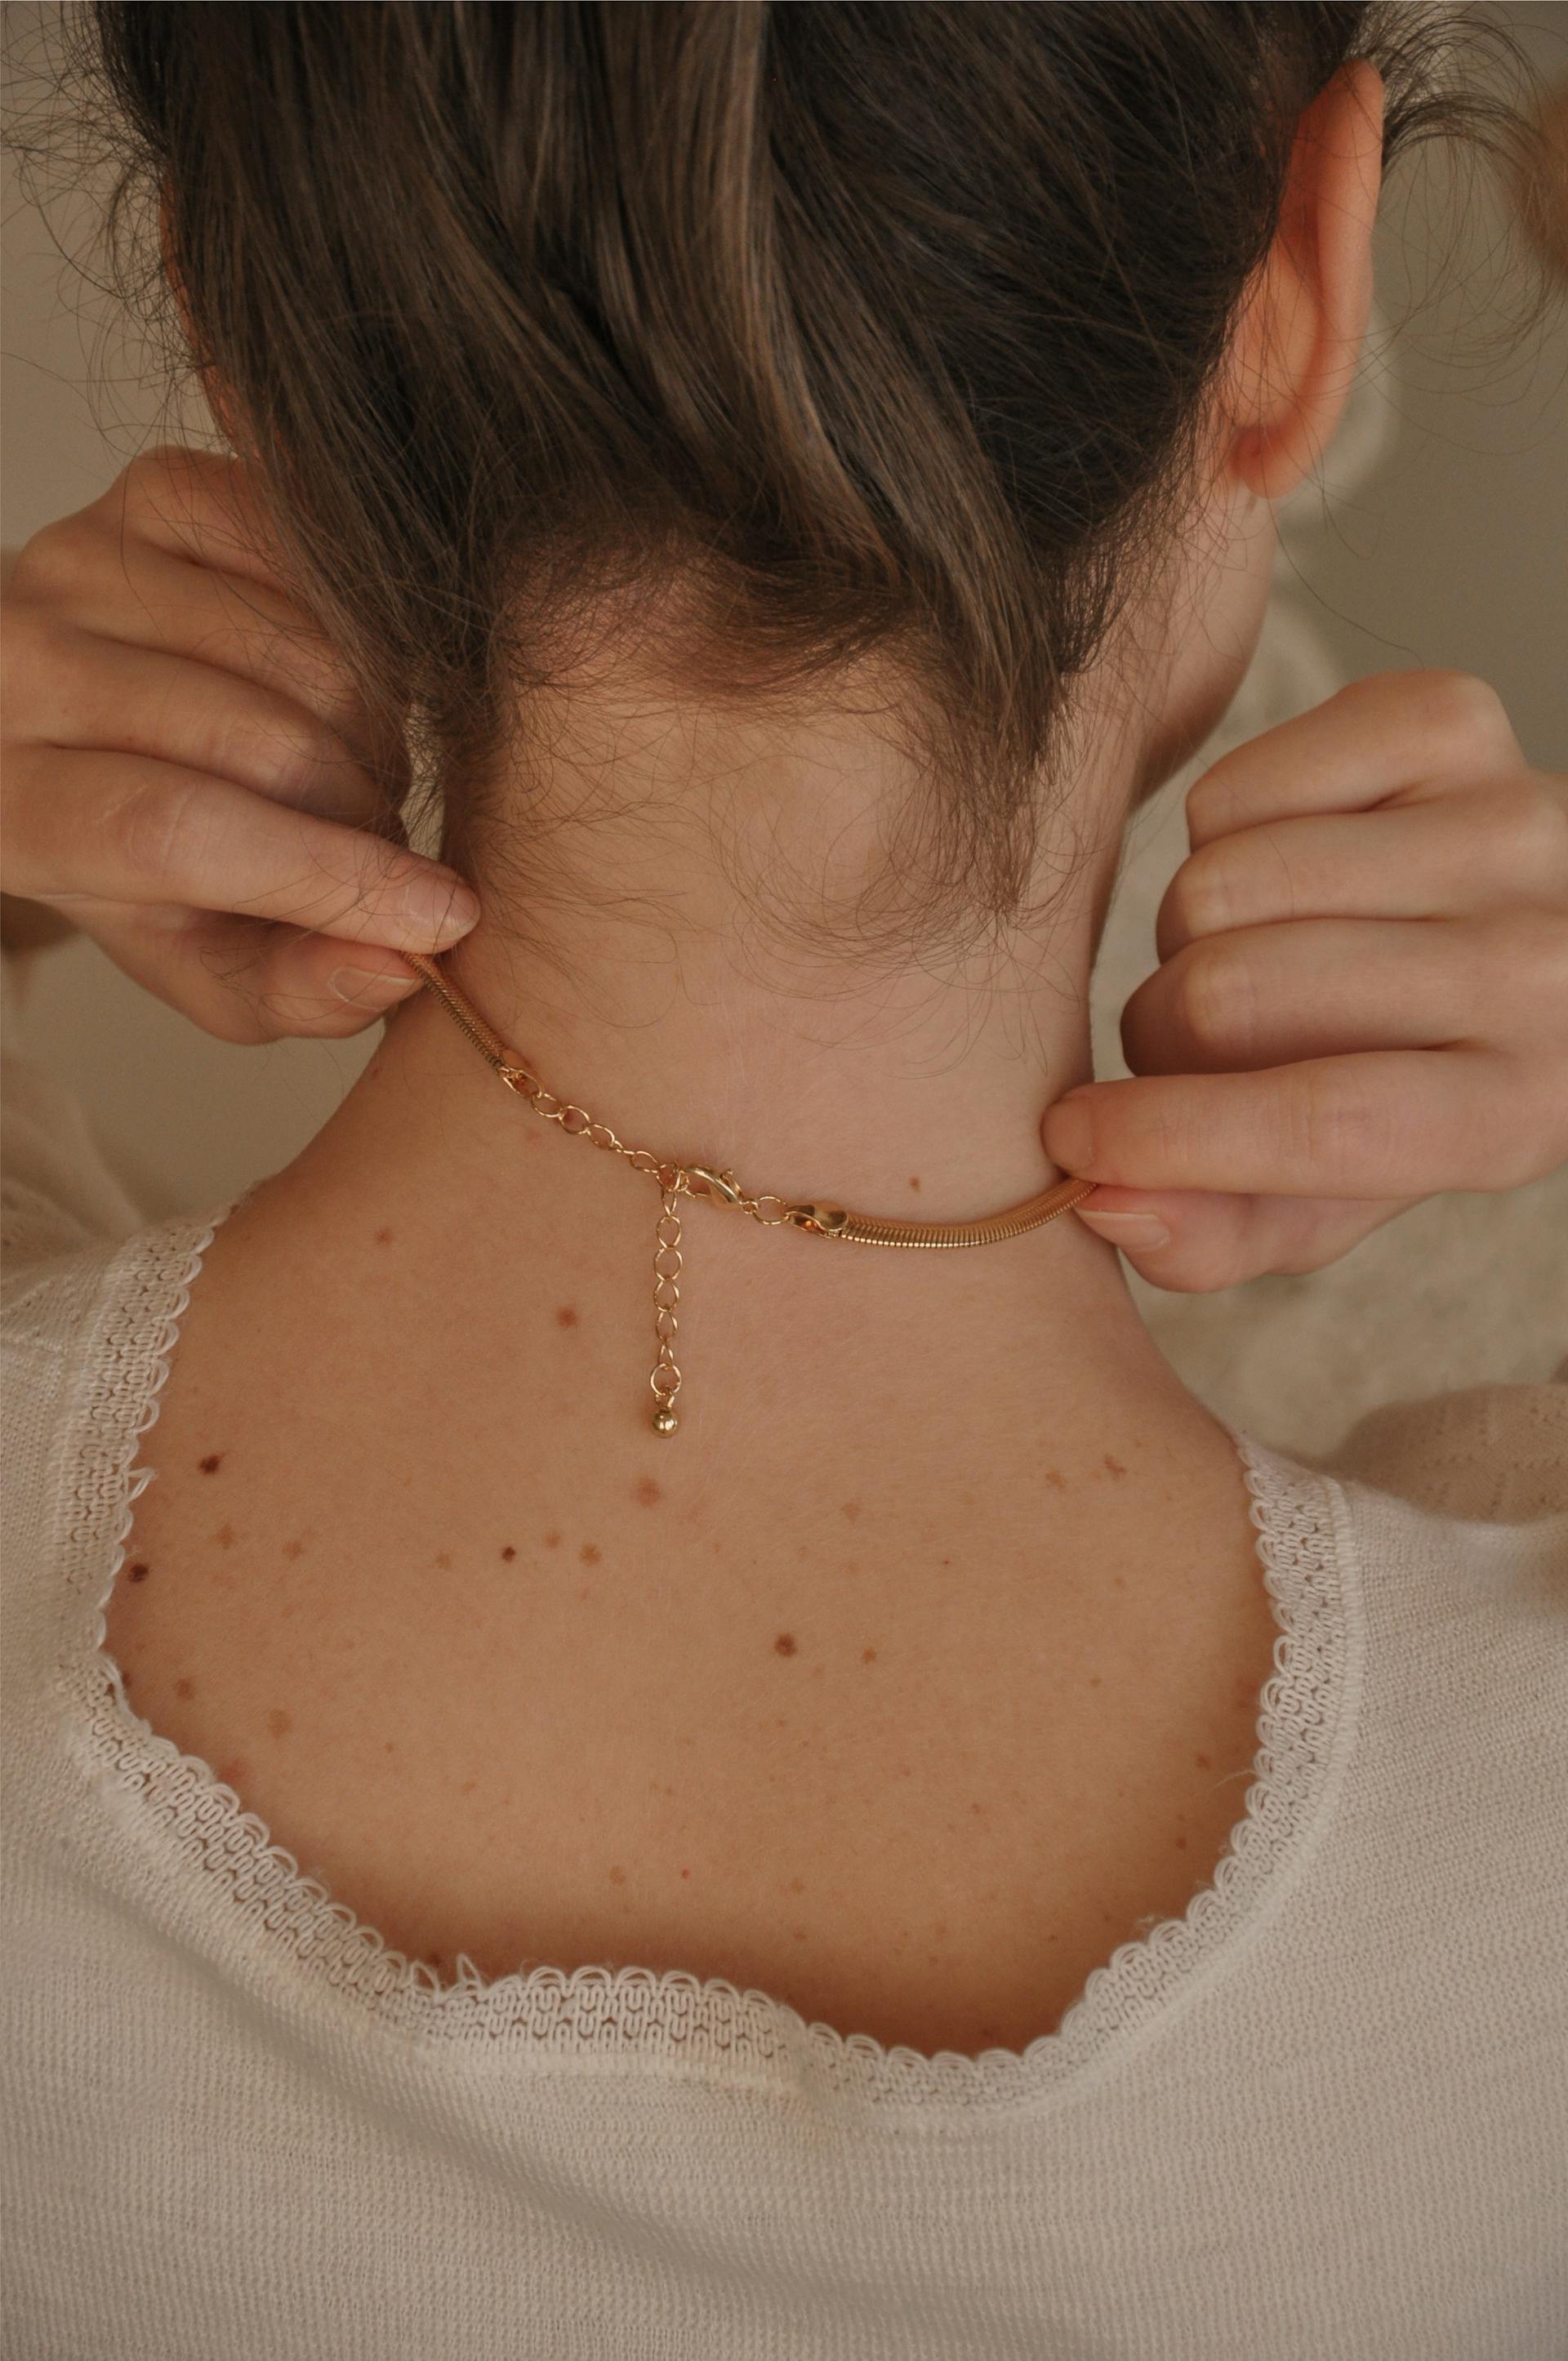 Vue de dos d'une femme touchant son collier | Source : Pexels